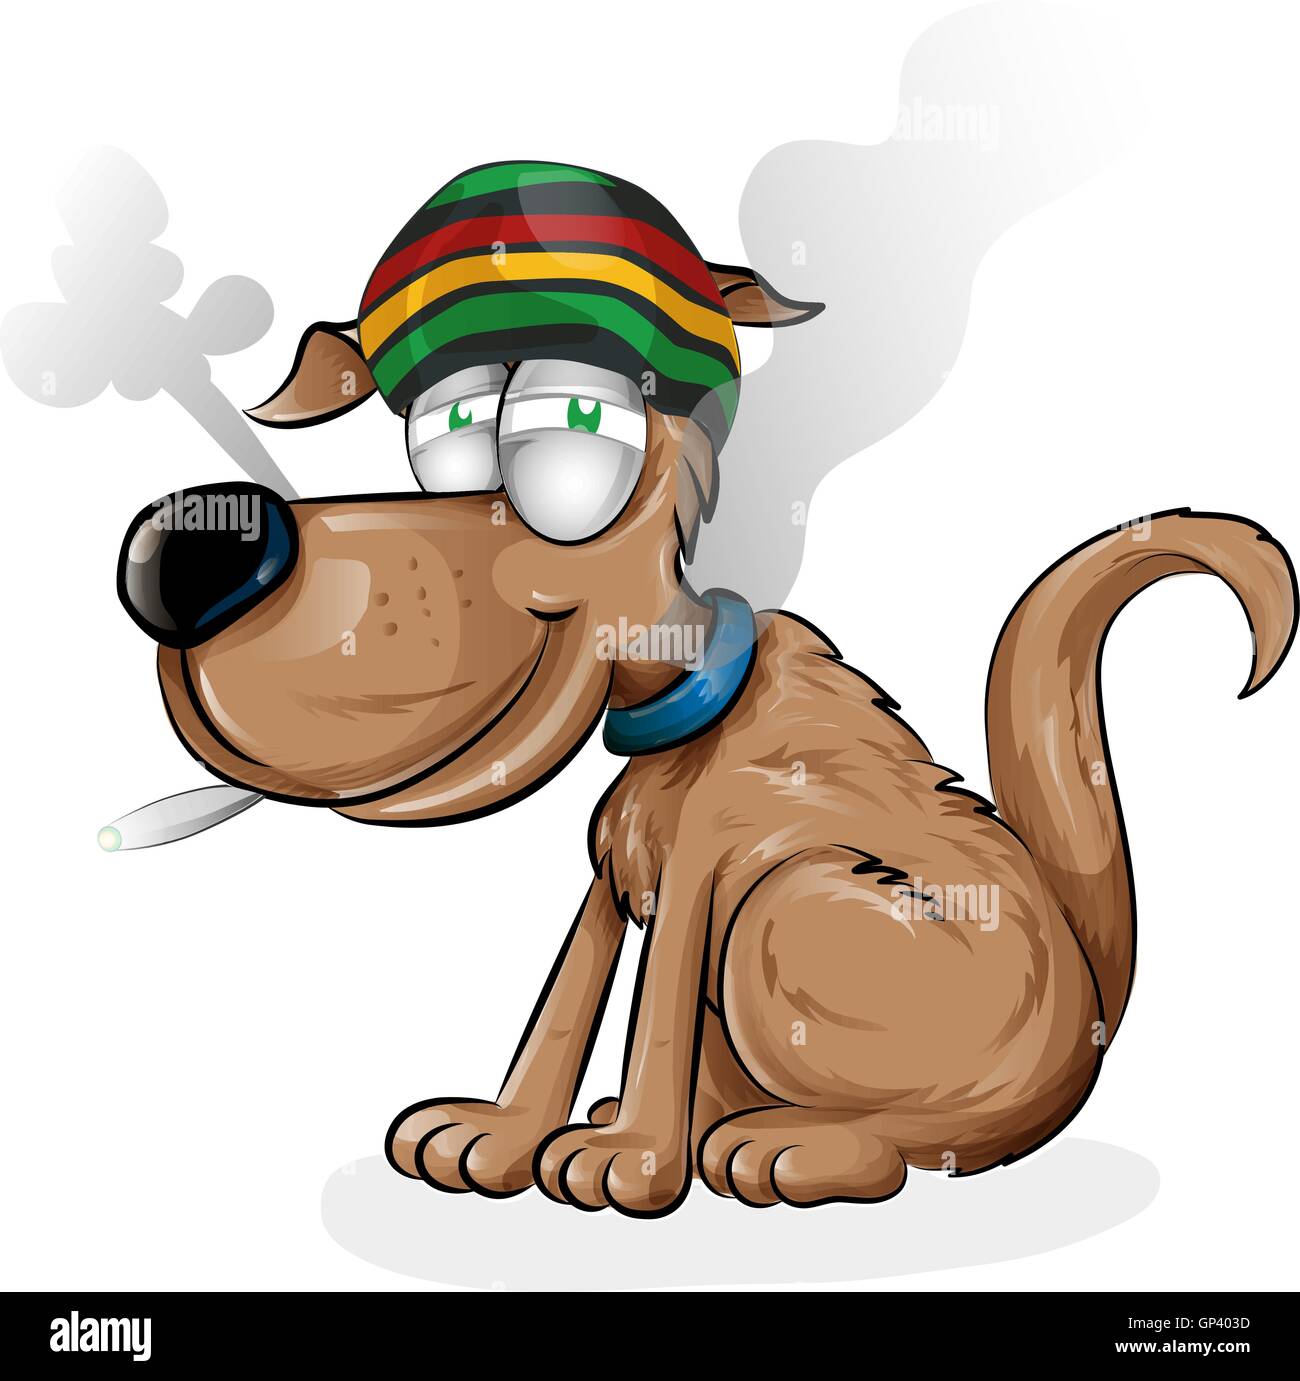 Dessin animé chien jamaïcaine isolé sur fond blanc Illustration de Vecteur